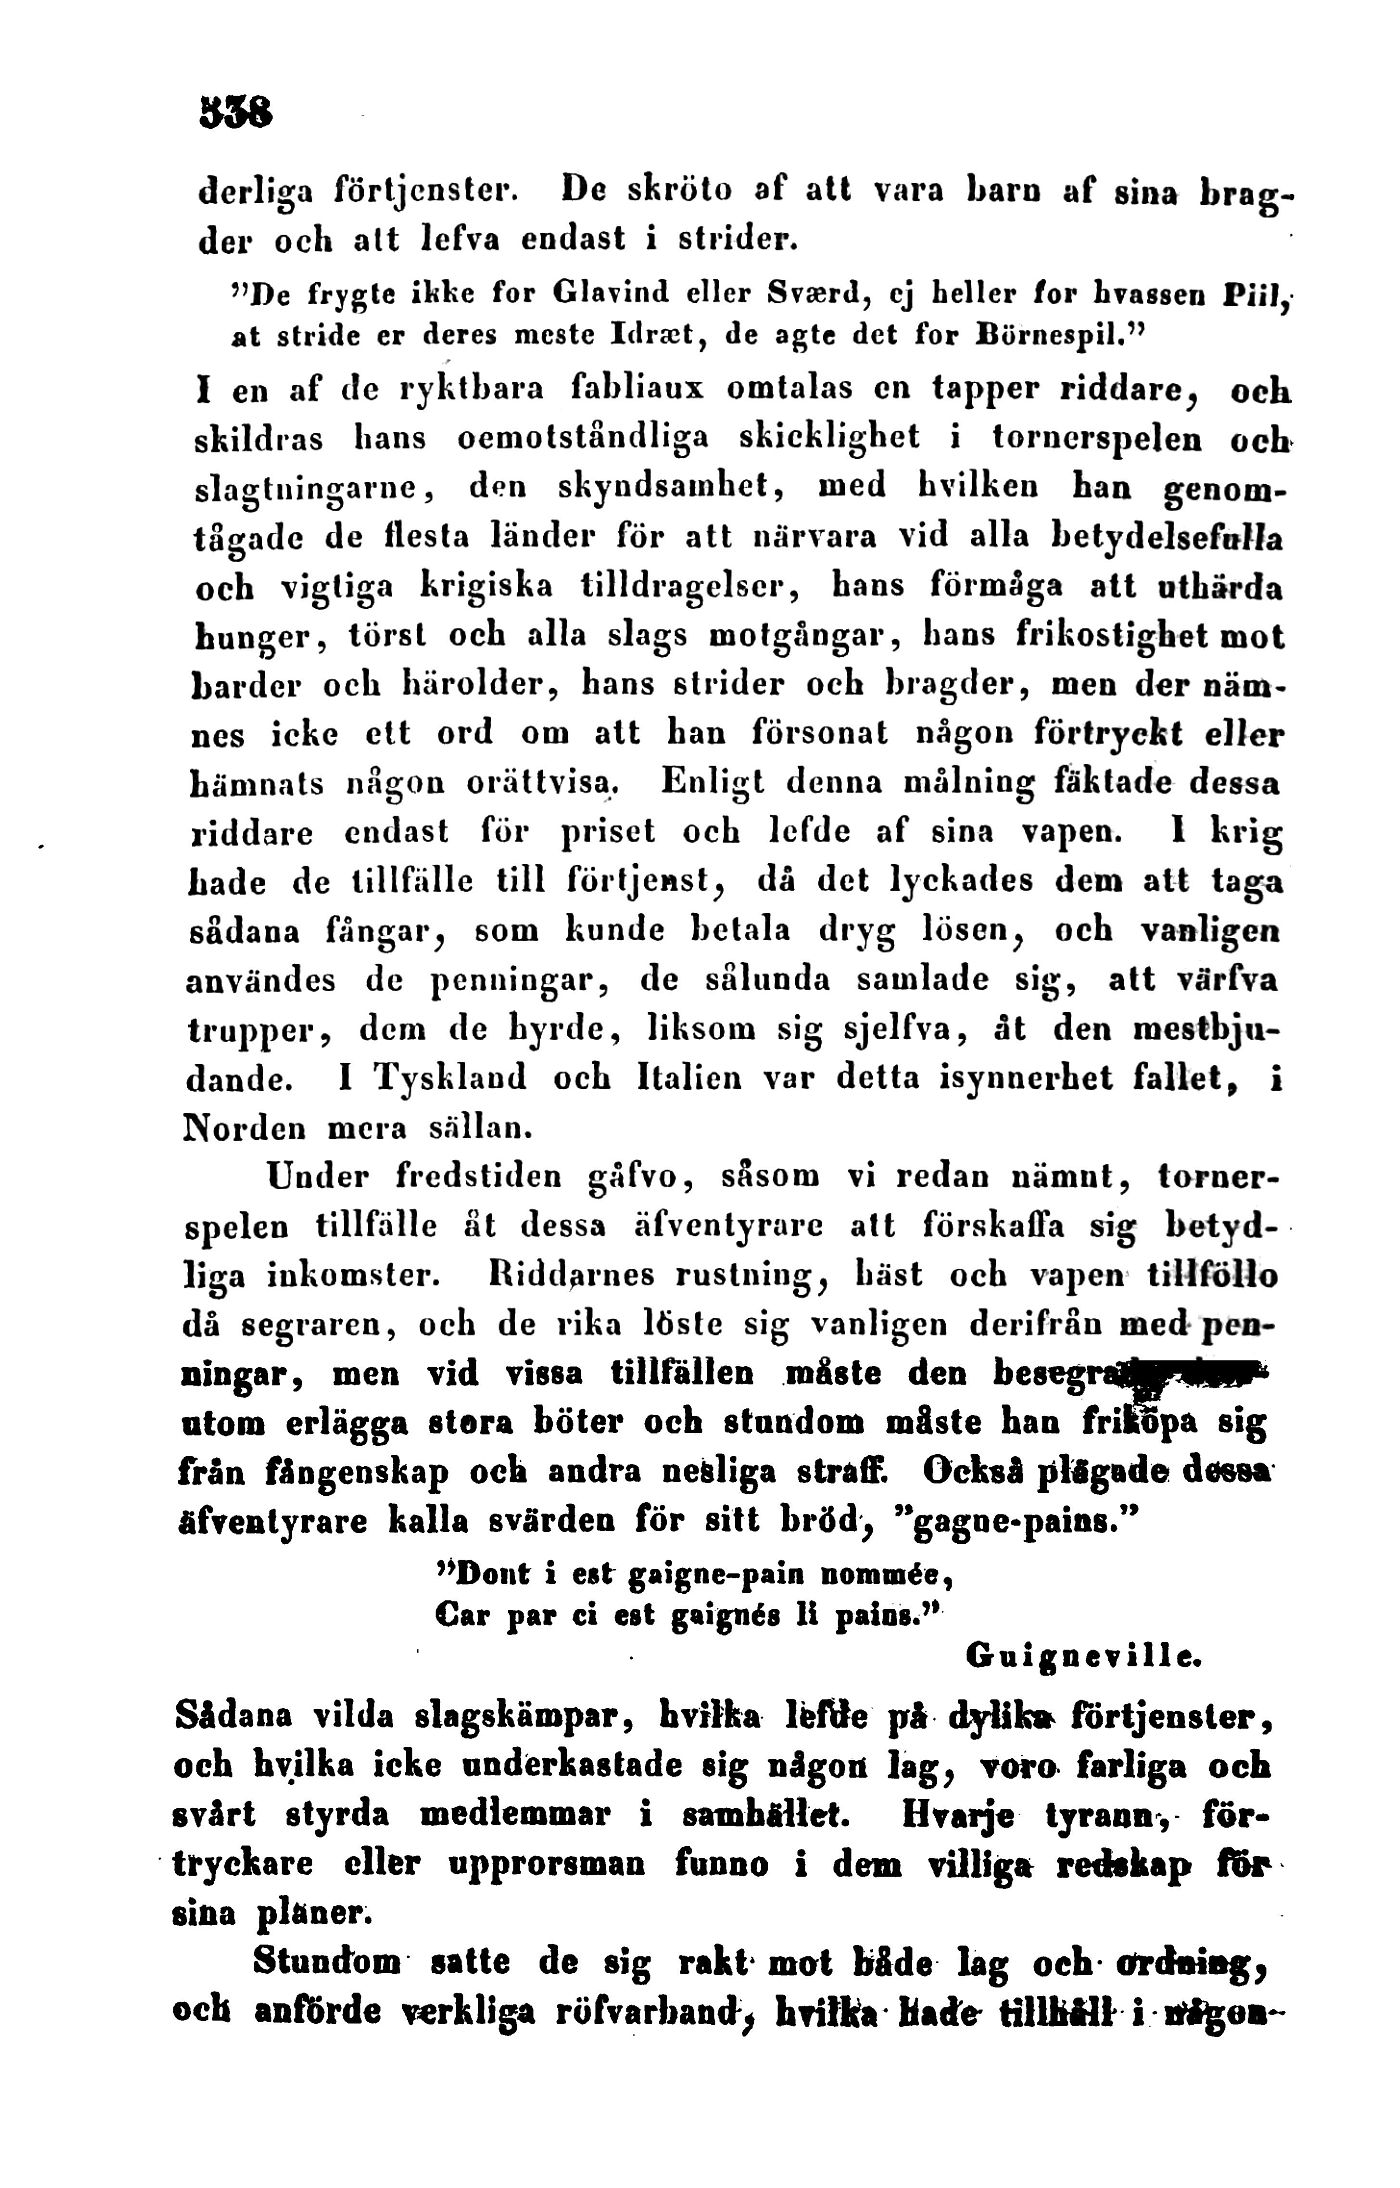 538 (Frey. vetenskap och konst / 1847)